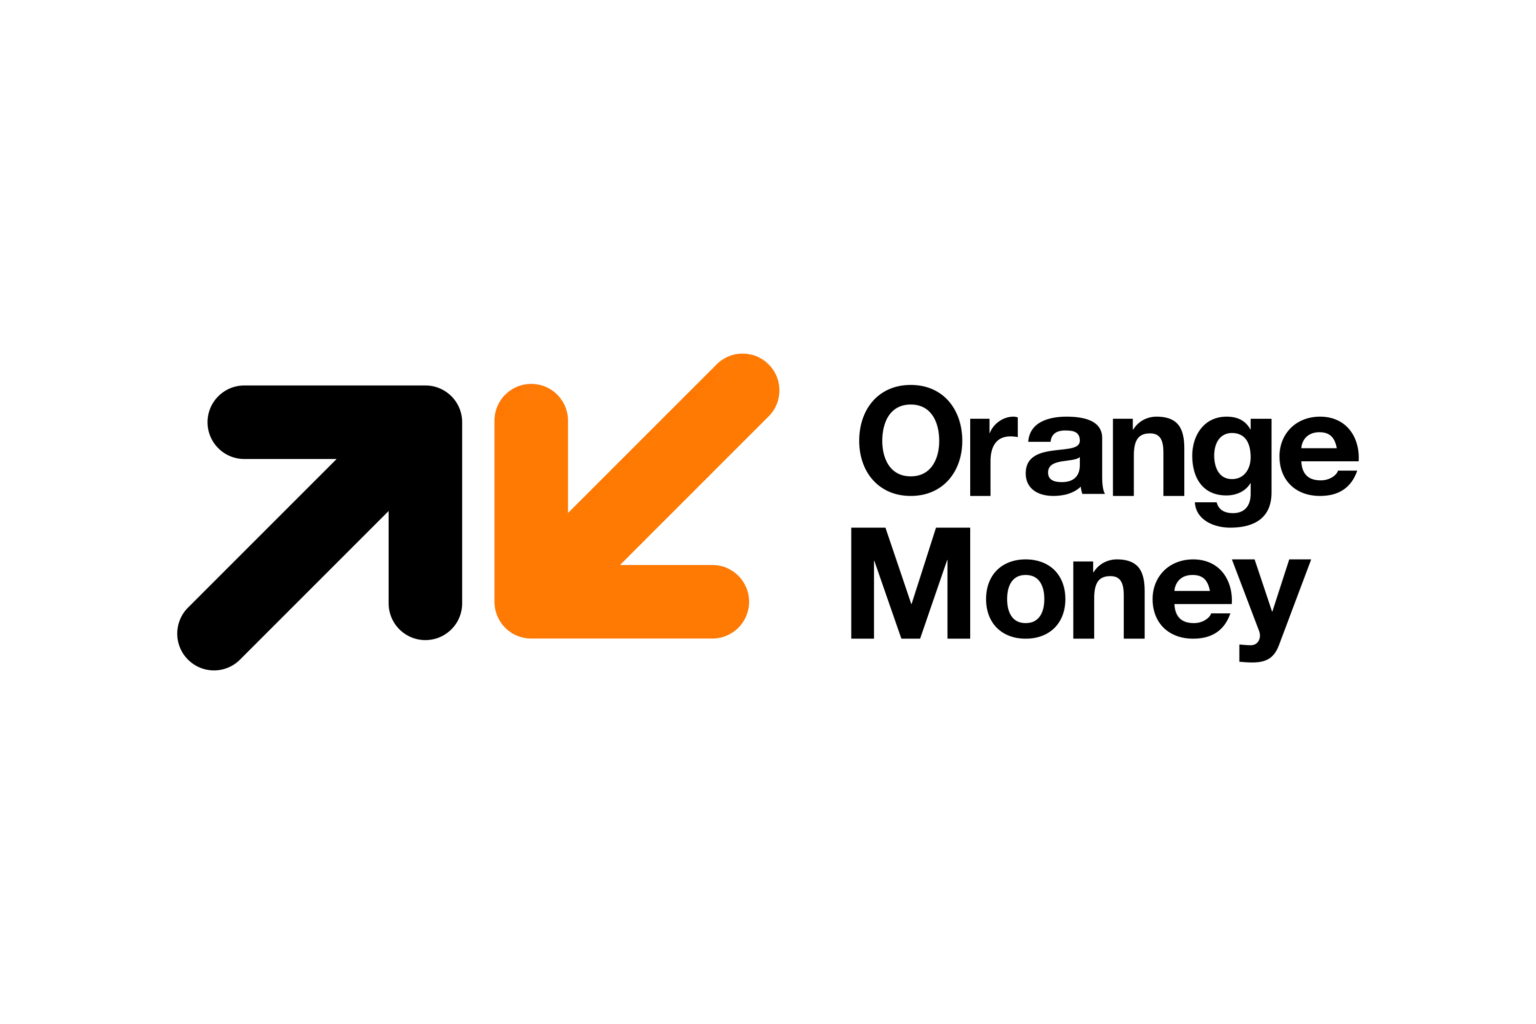 Orange_Money-Logo.wine_-1536x1024